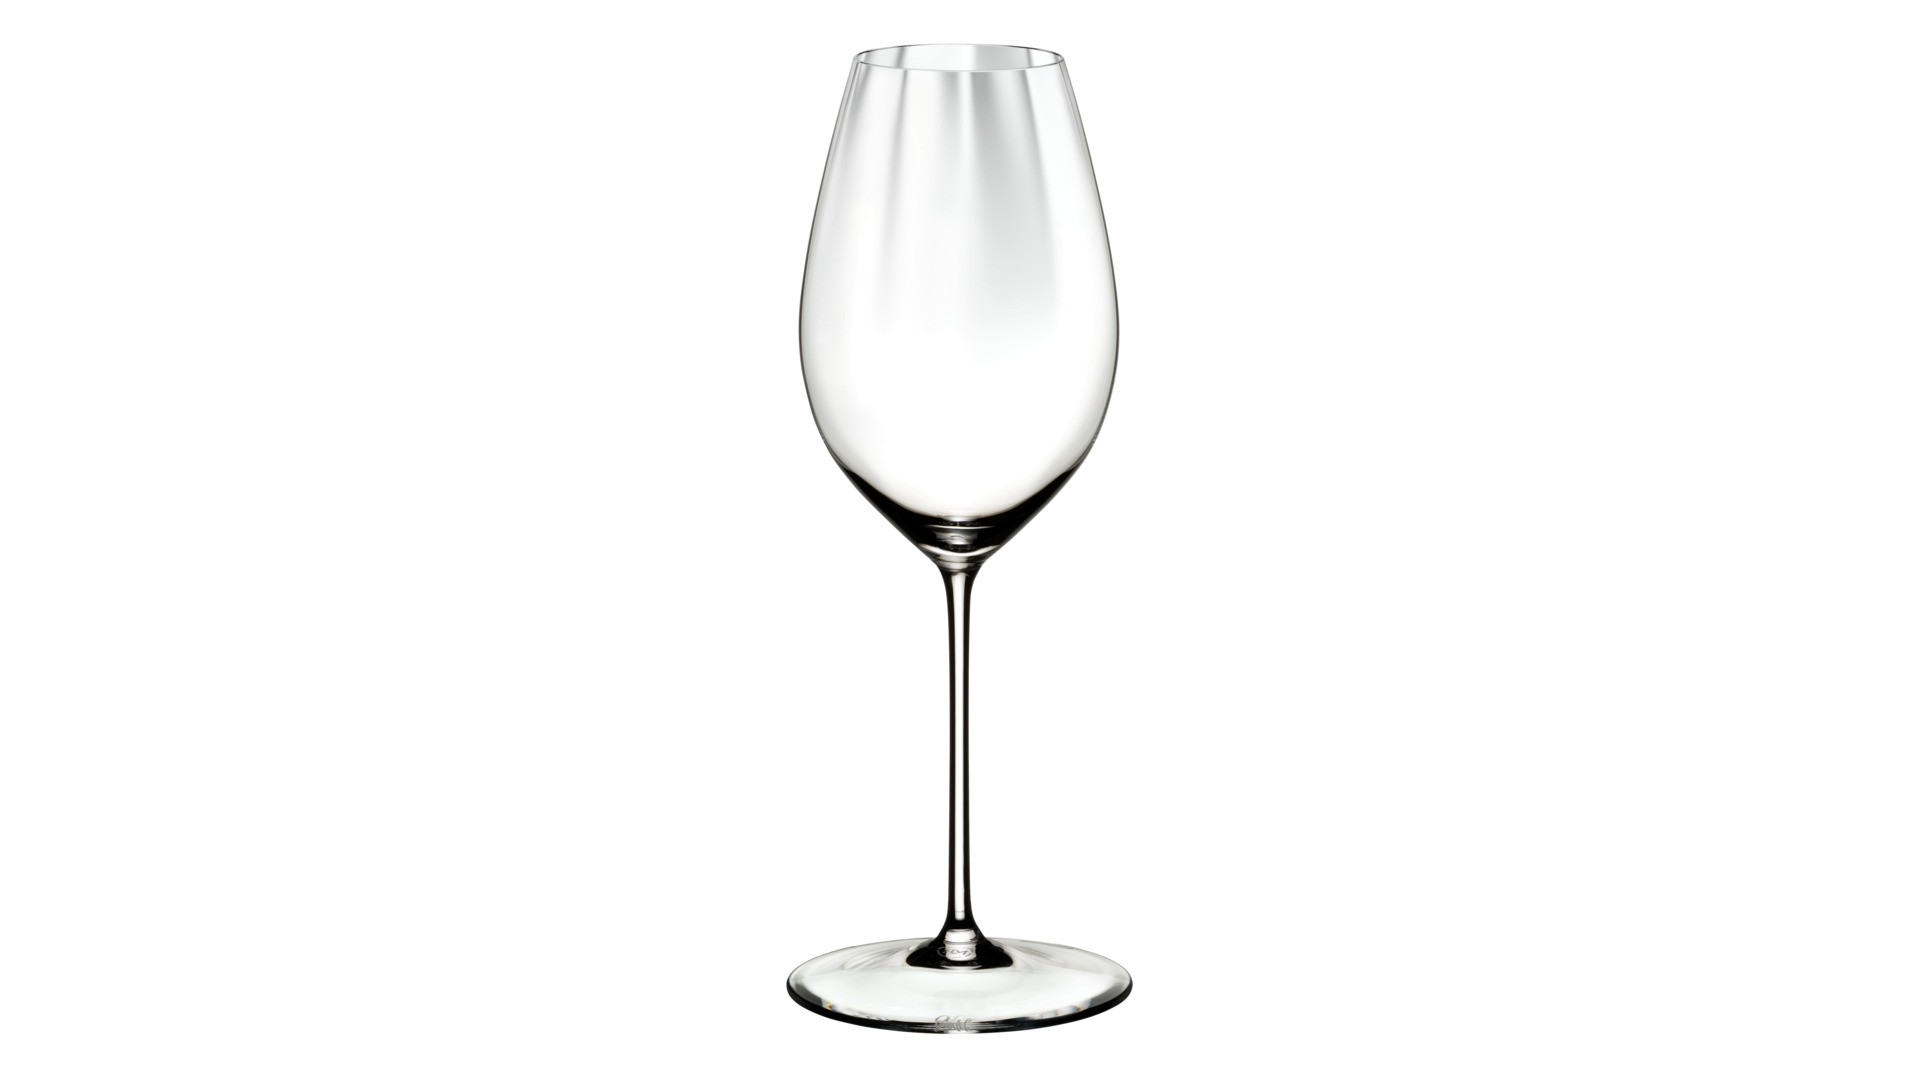 Набор бокалов для белого вина Riedel Performance Совиньон блан 375 мл, h24,5 см, 2 шт, стекло хруста